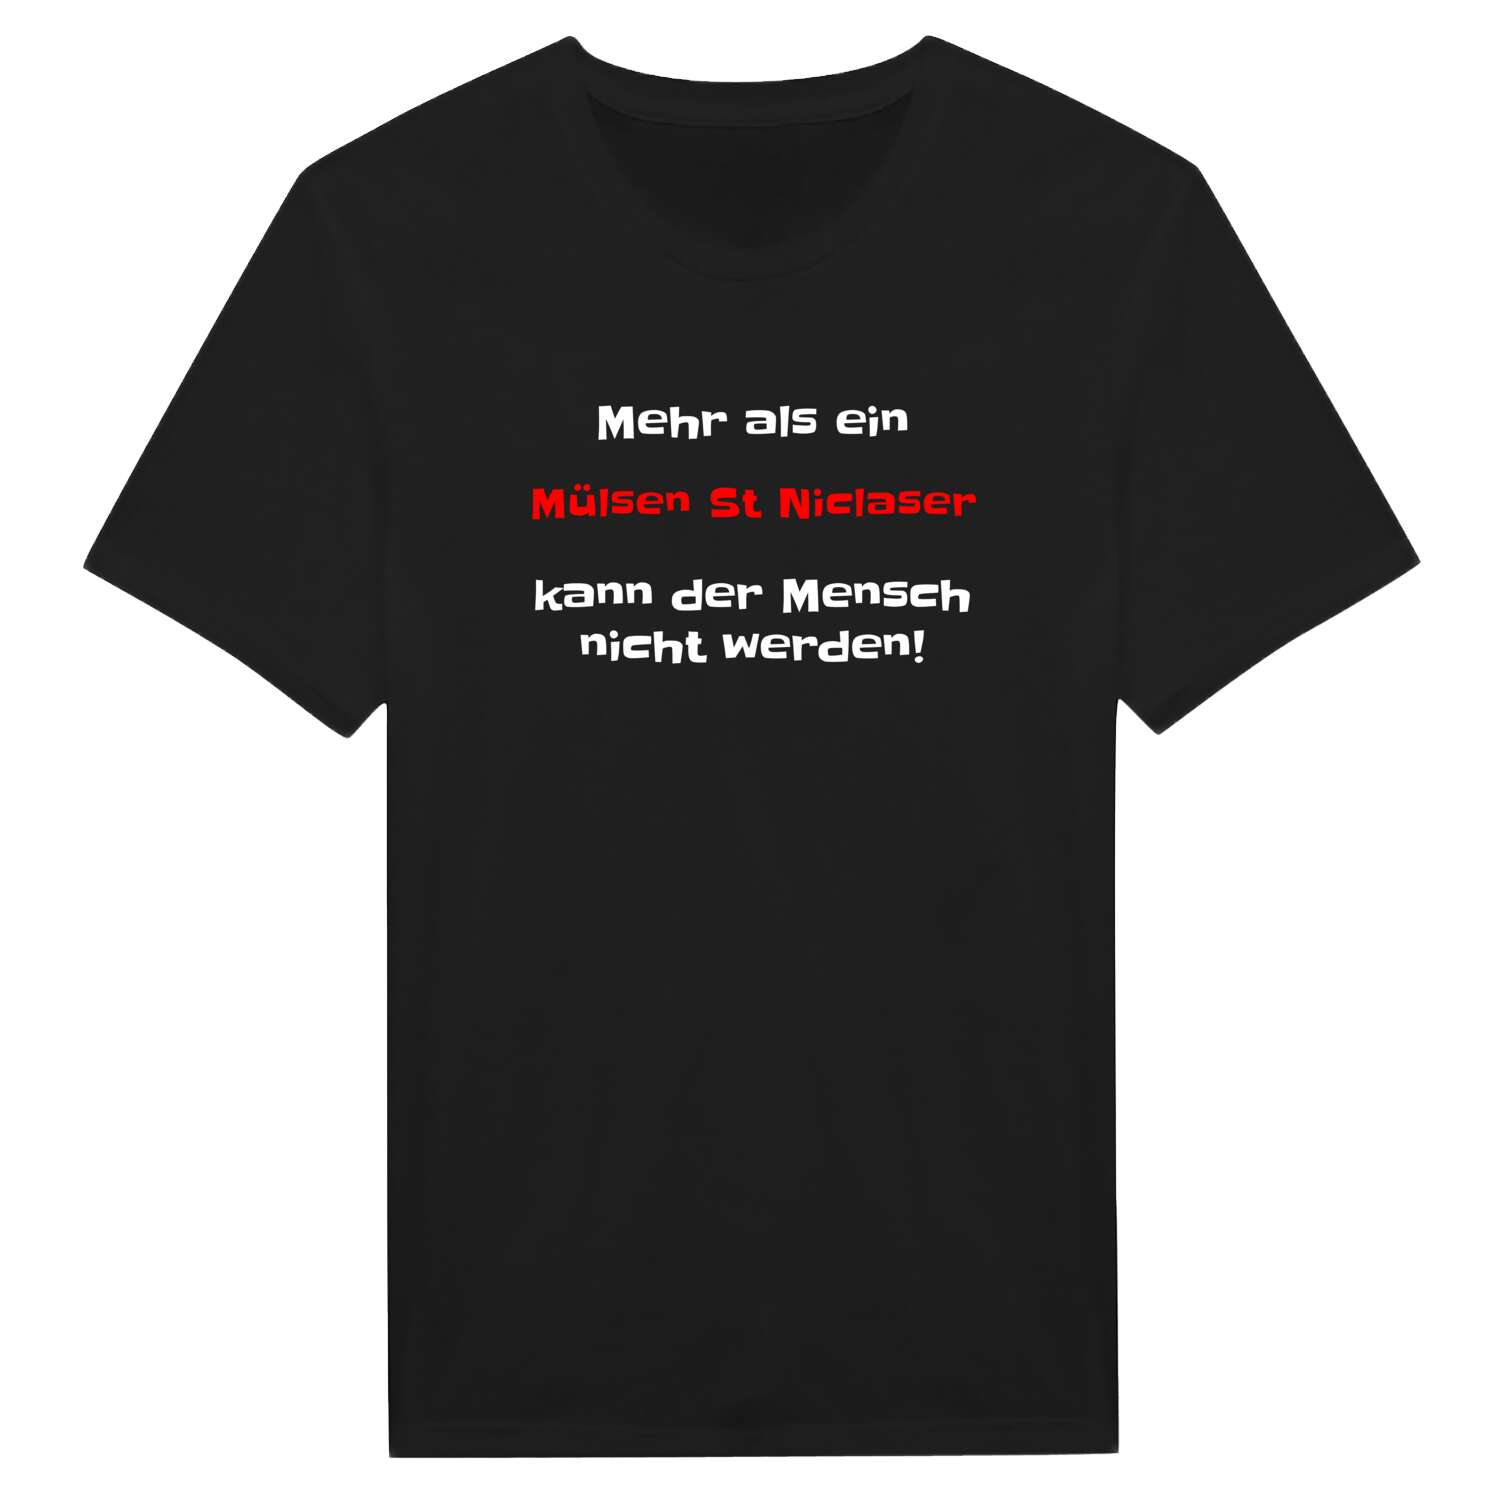 Mülsen St Niclas T-Shirt »Mehr als ein«